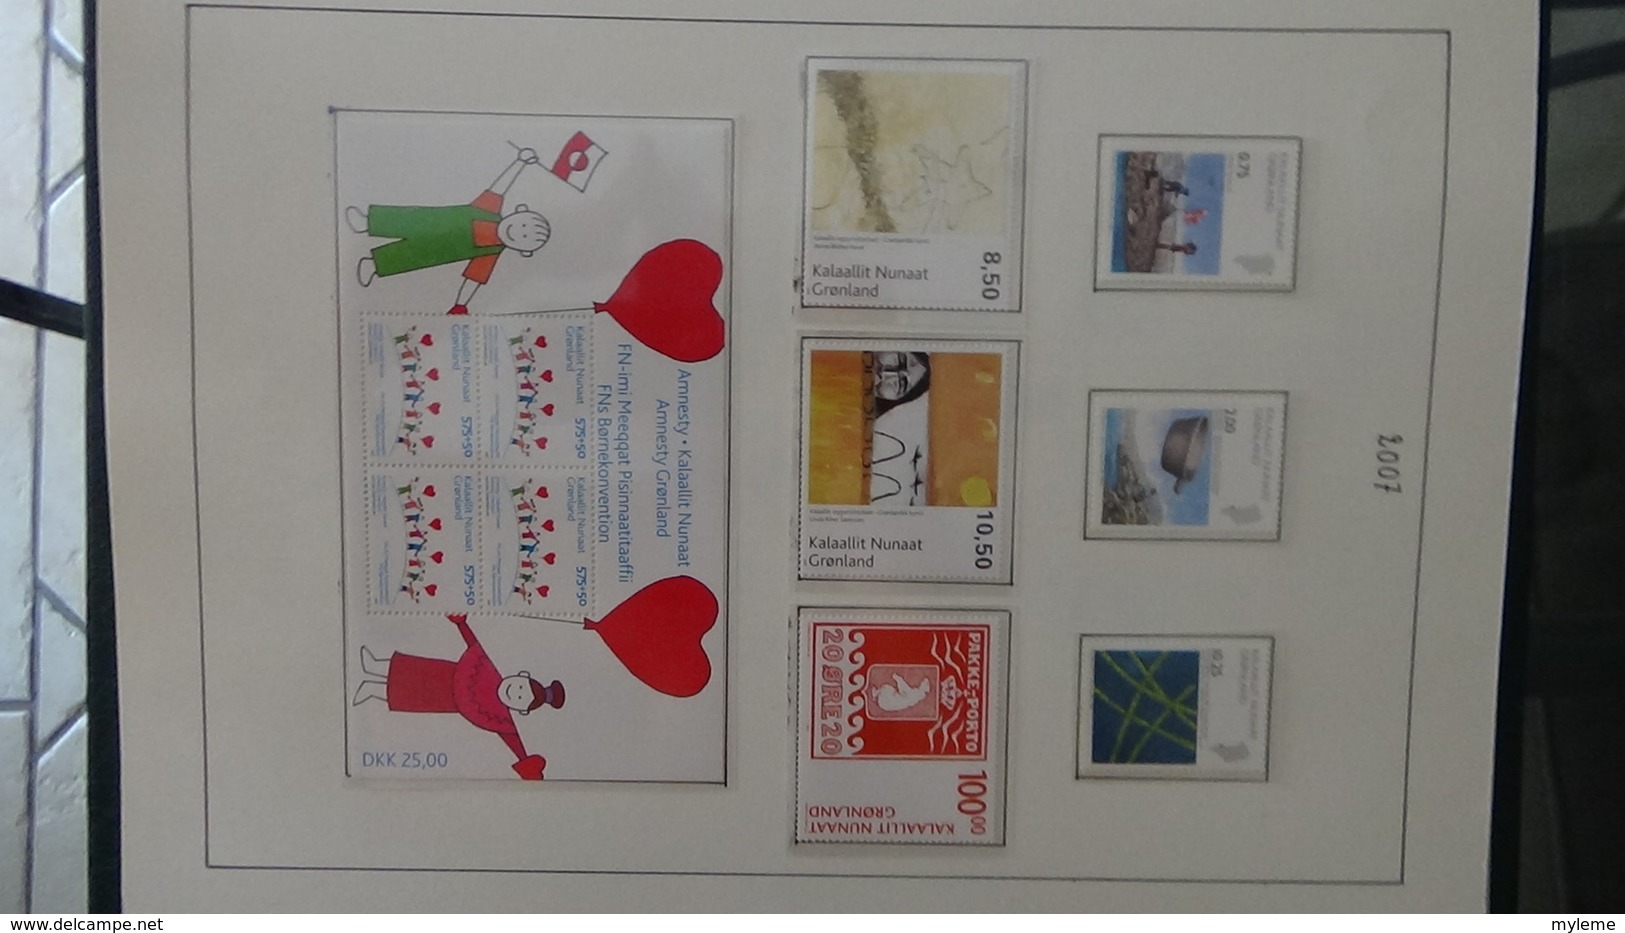 Collection de timbres et blocs ** du Groendland. PORT OFFERT DES 50 EUROS D'ACHATS. Voir commentaires